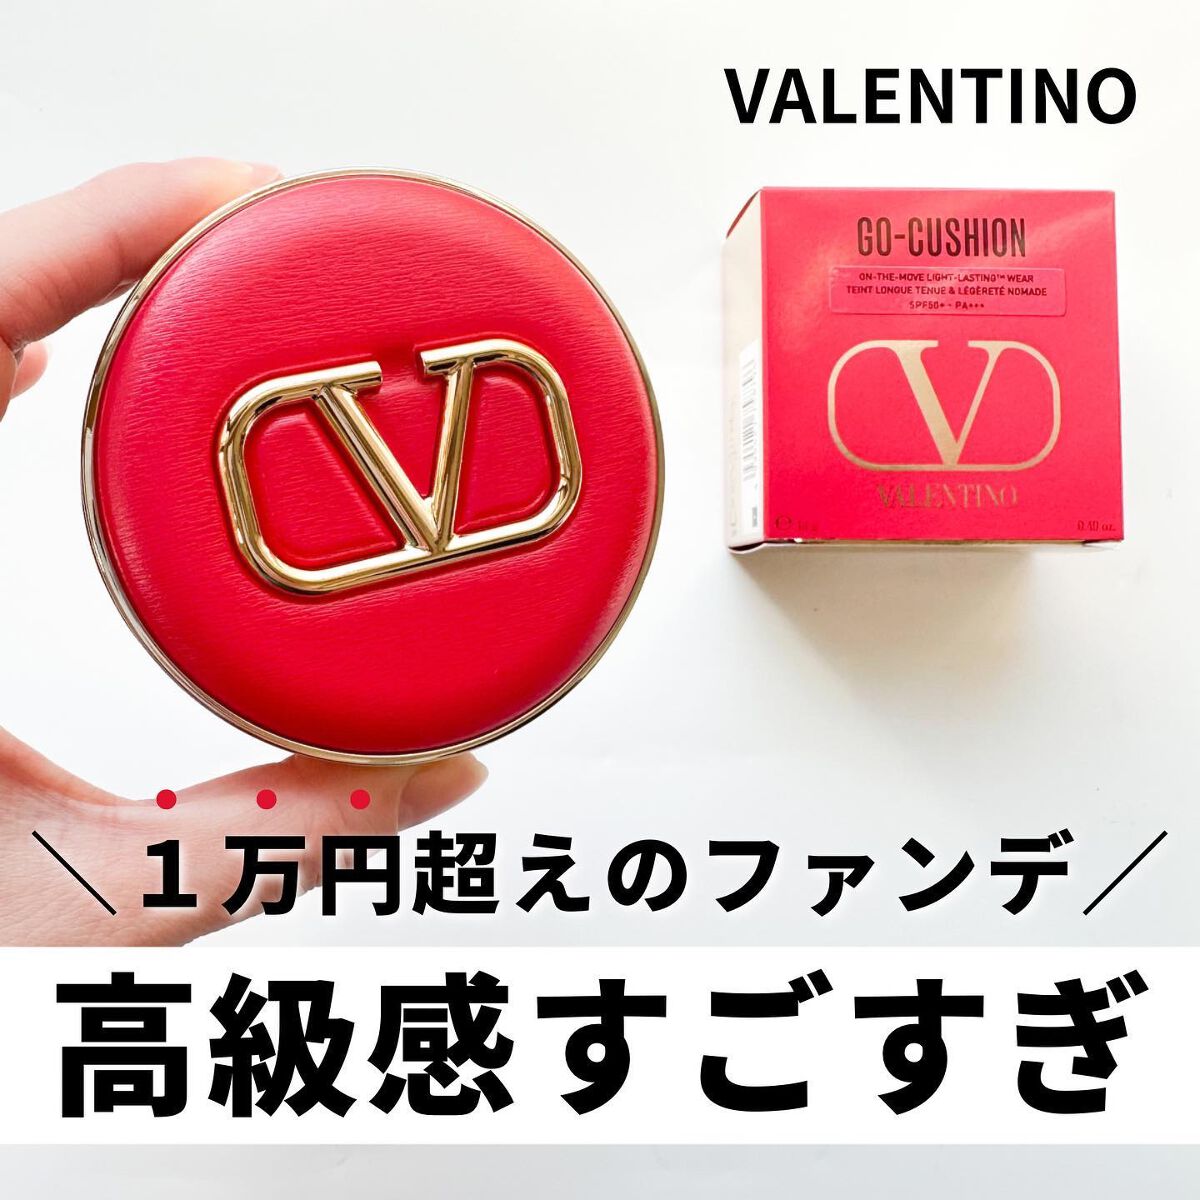 Sato♡ on LIPS 「. Valentino Beauty ..」 LIPS